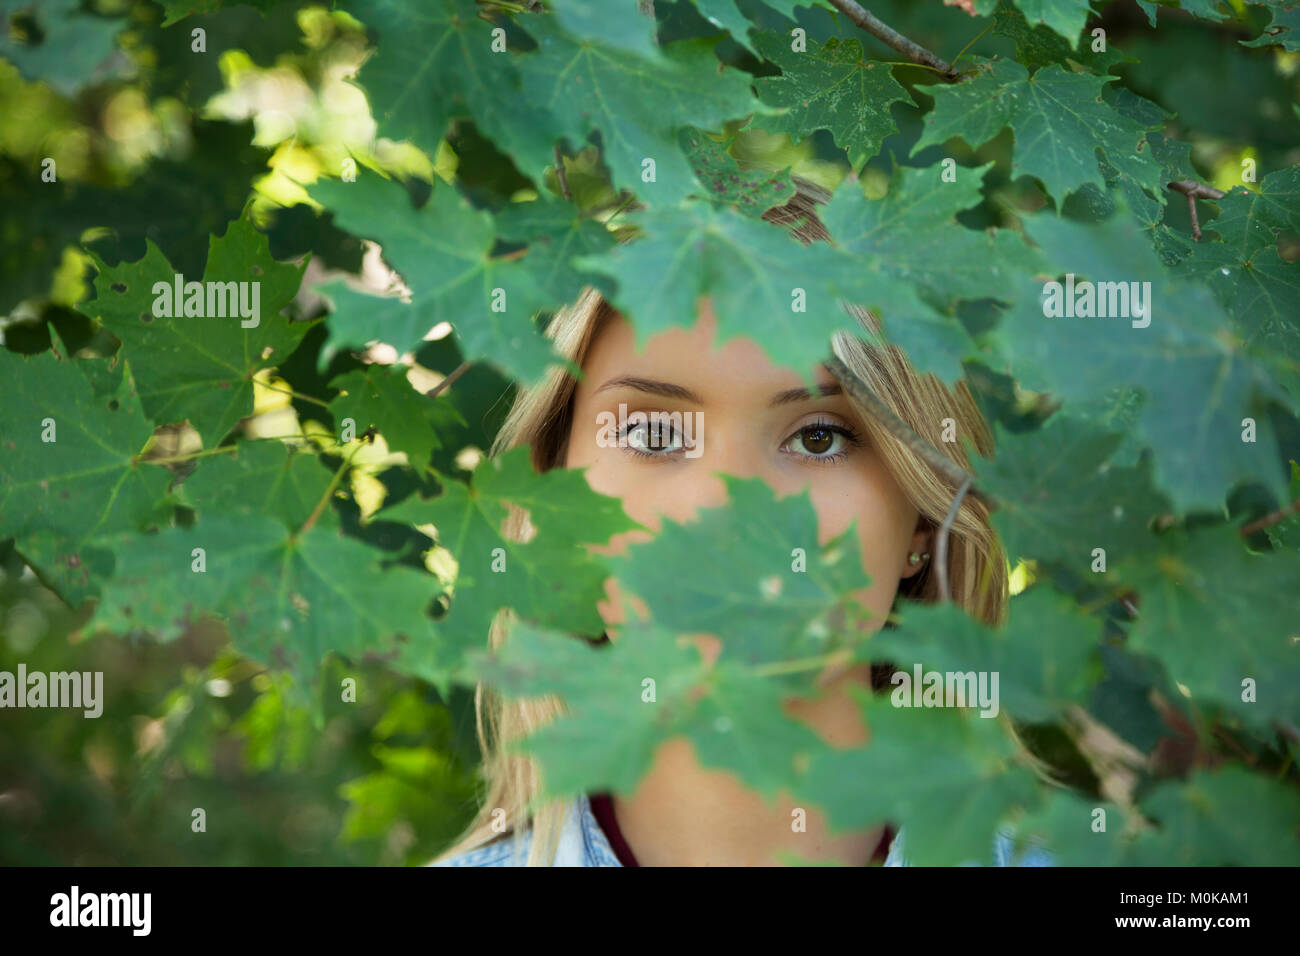 Une adolescente aux cheveux blonds et les yeux bruns debout dans le feuillage d'un arbre avec son visage obscurci par des feuilles Banque D'Images